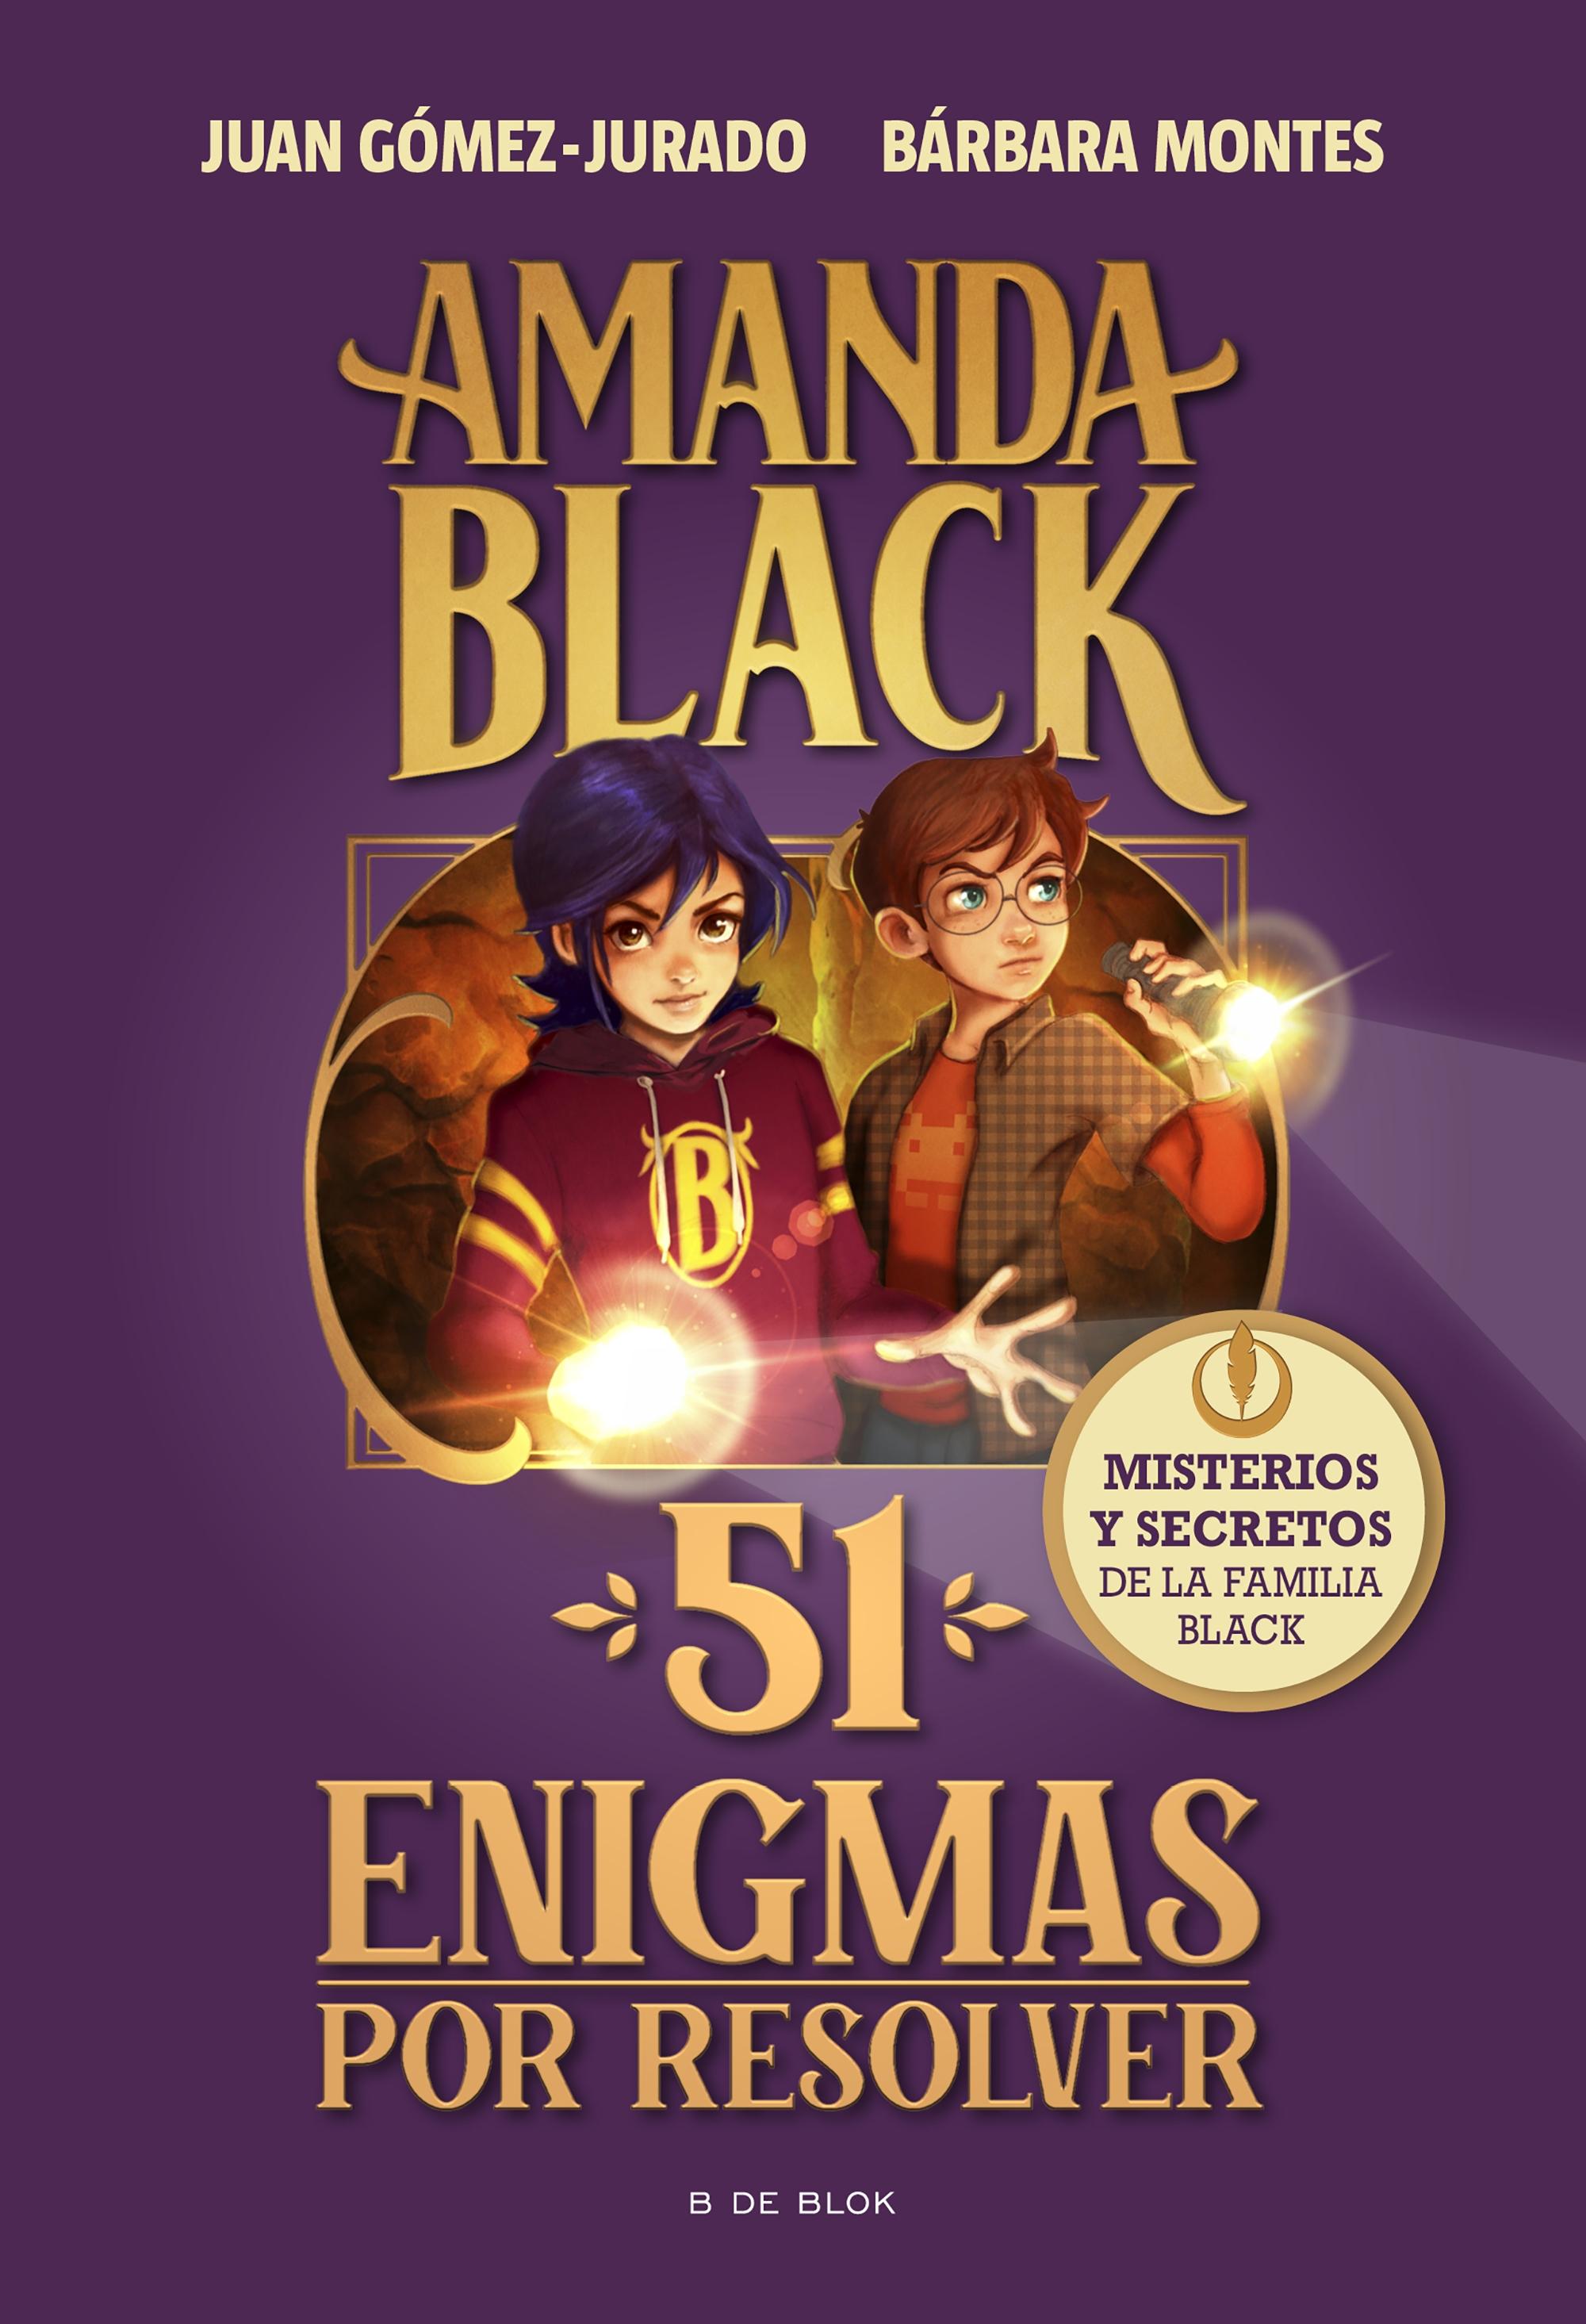 Amanda Black. 51 Enigmas por Resolver "Acertijos, Misterios y Secretos de la Familia Black". 